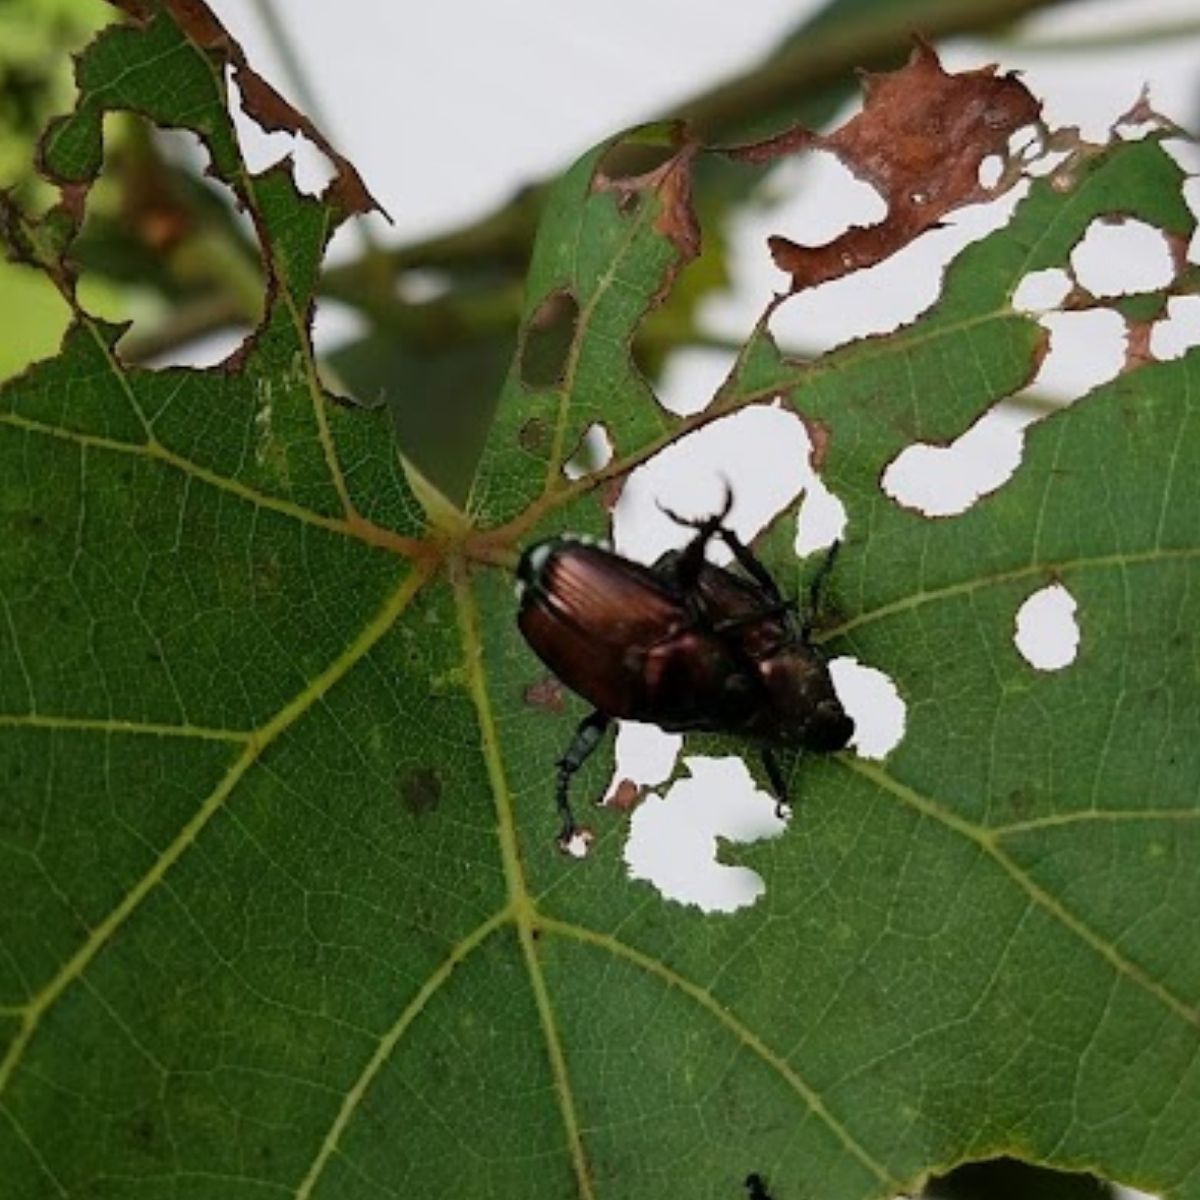 Japanese beetles feeding on grape leaves